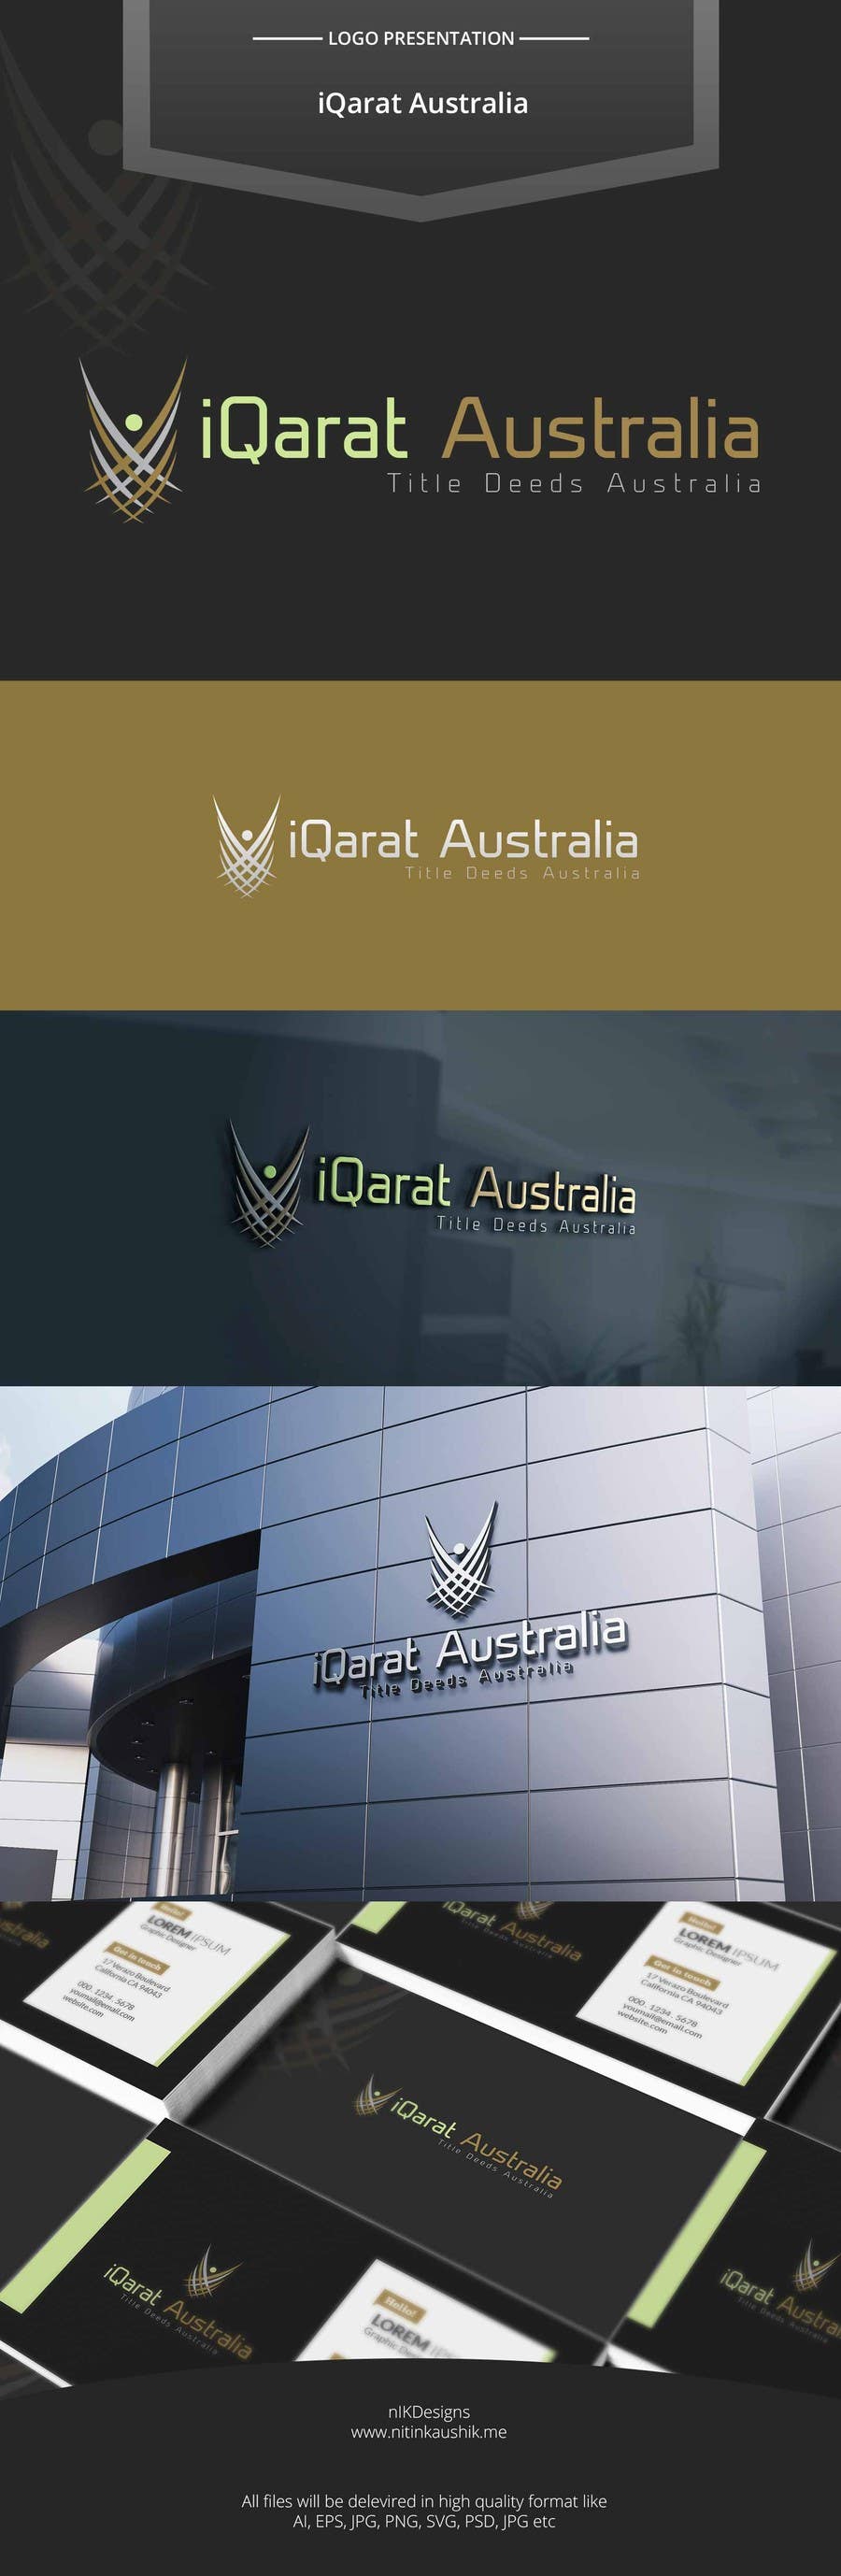 Příspěvek č. 89 do soutěže                                                 Design a Logo for an premium facilitator ‘Off-Market’ property concierge business - iQarat Australia
                                            